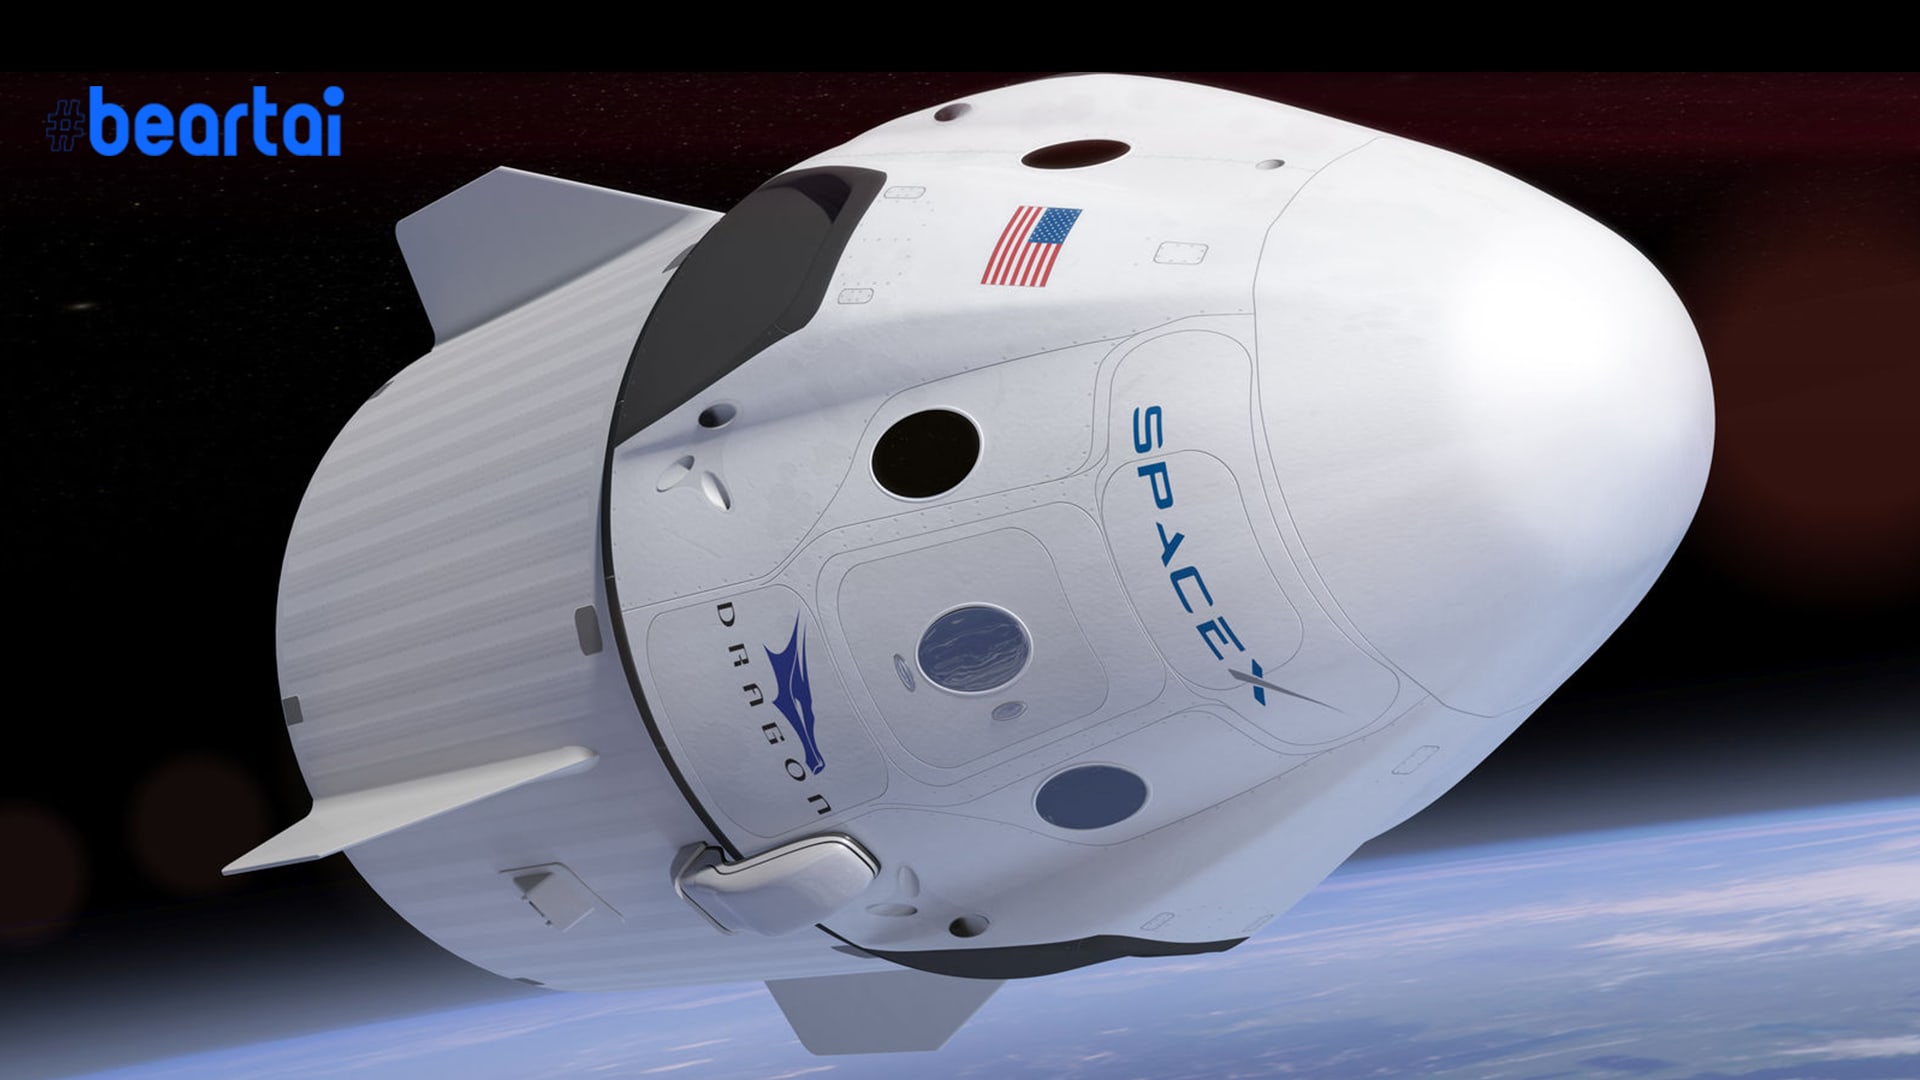 ยาน Dragon 2 ของ SpaceX เลื่อนการส่งมนุษย์ขึ้นอวกาศหลังสภาพอากาศไม่เป็นใจ